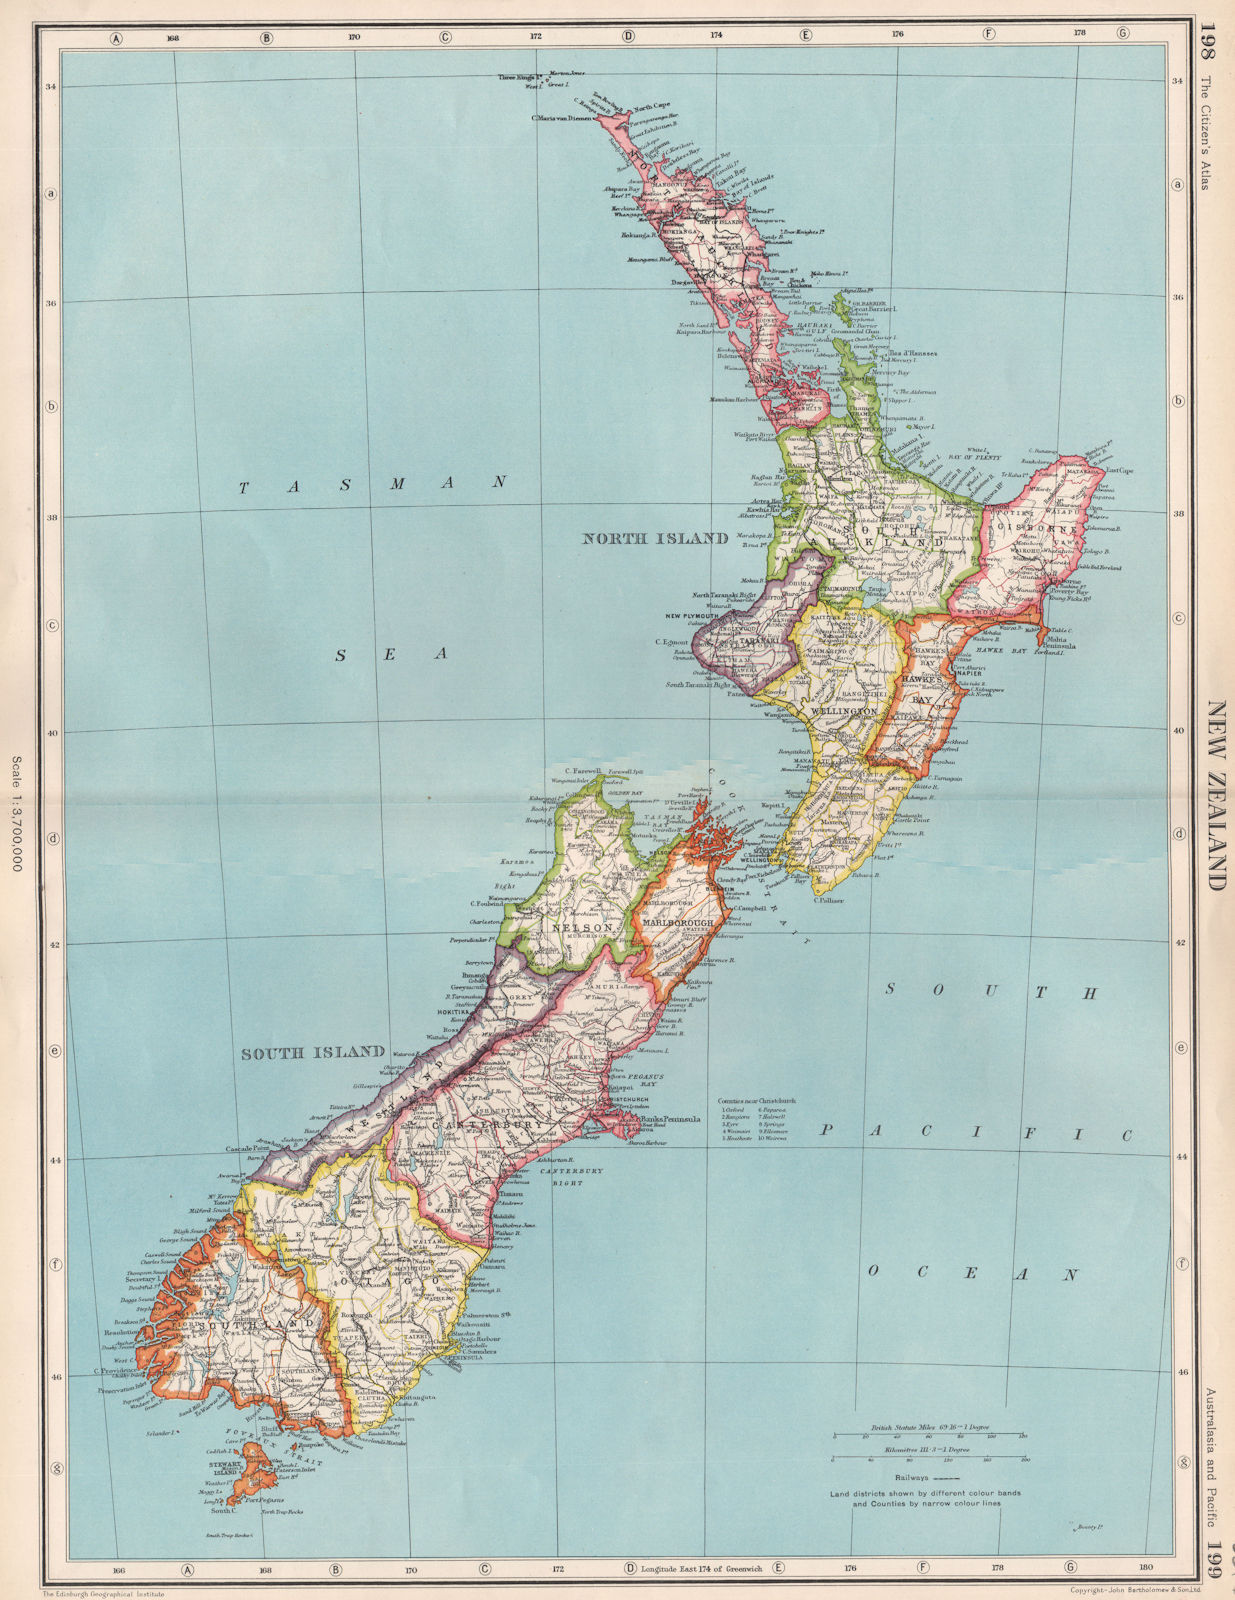 NEW ZEALAND. Showing provinces. BARTHOLOMEW 1952 old vintage map plan chart